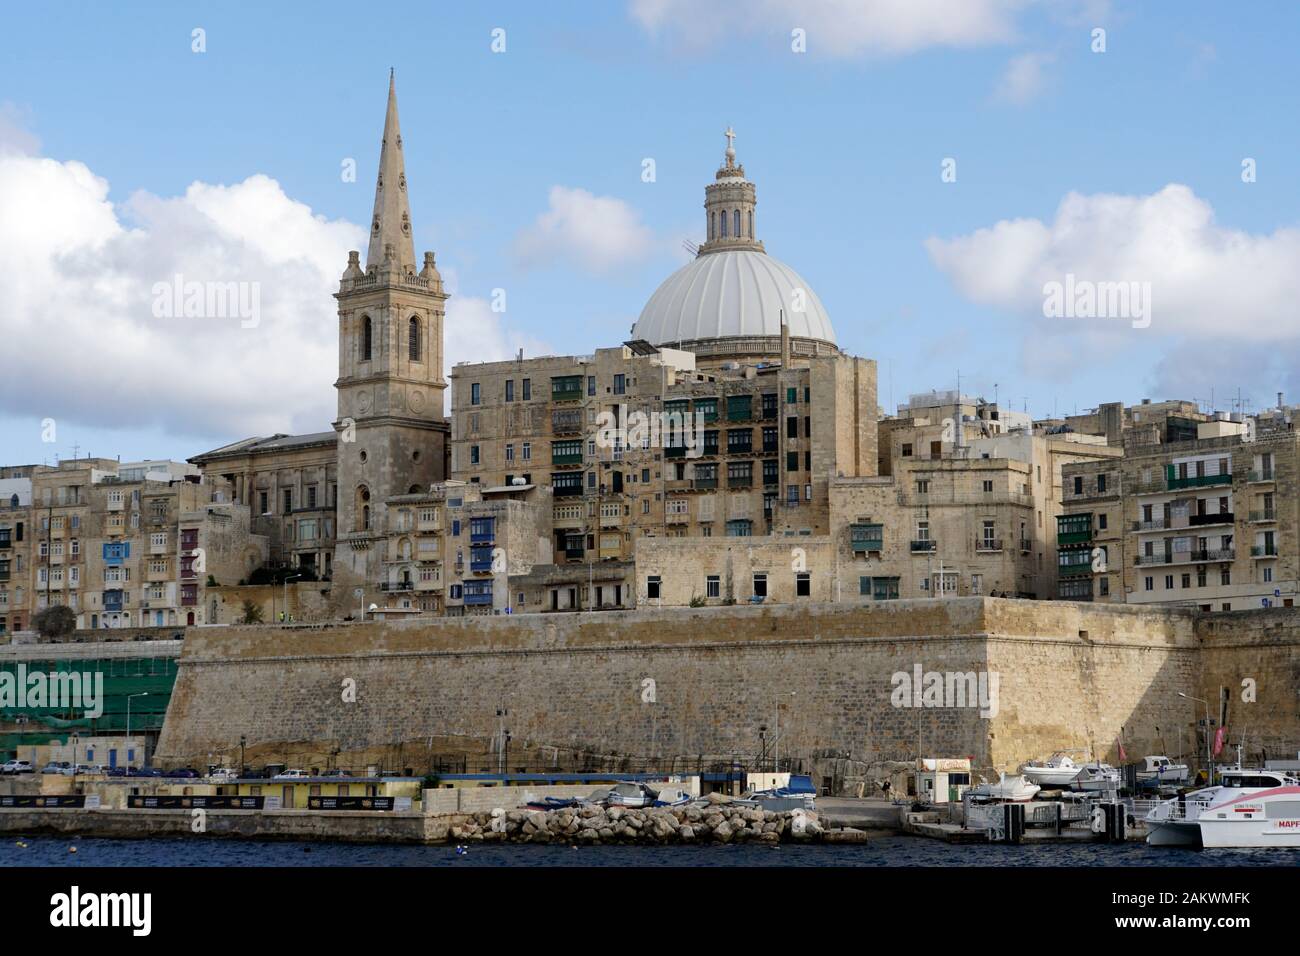 Hafenrundfahrt durch den Grand Harbour - Karmelitenkirche und anglikanische Prokathedale St. Paul, Valletta, Malta Stockfoto